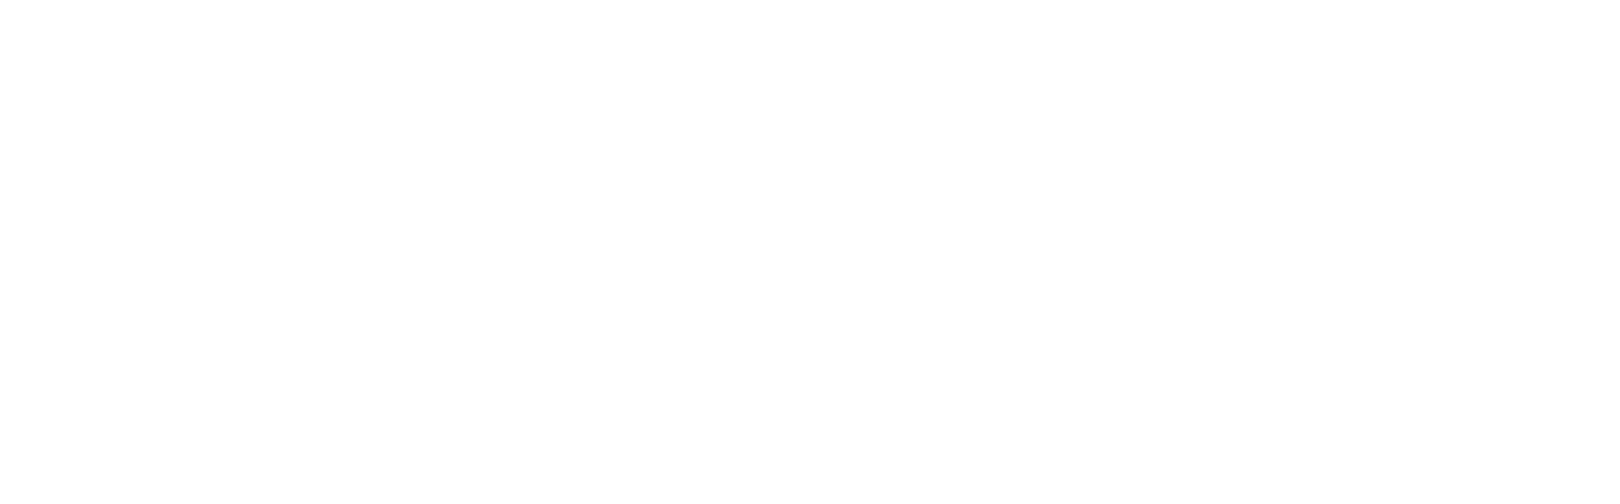 Syrve logo